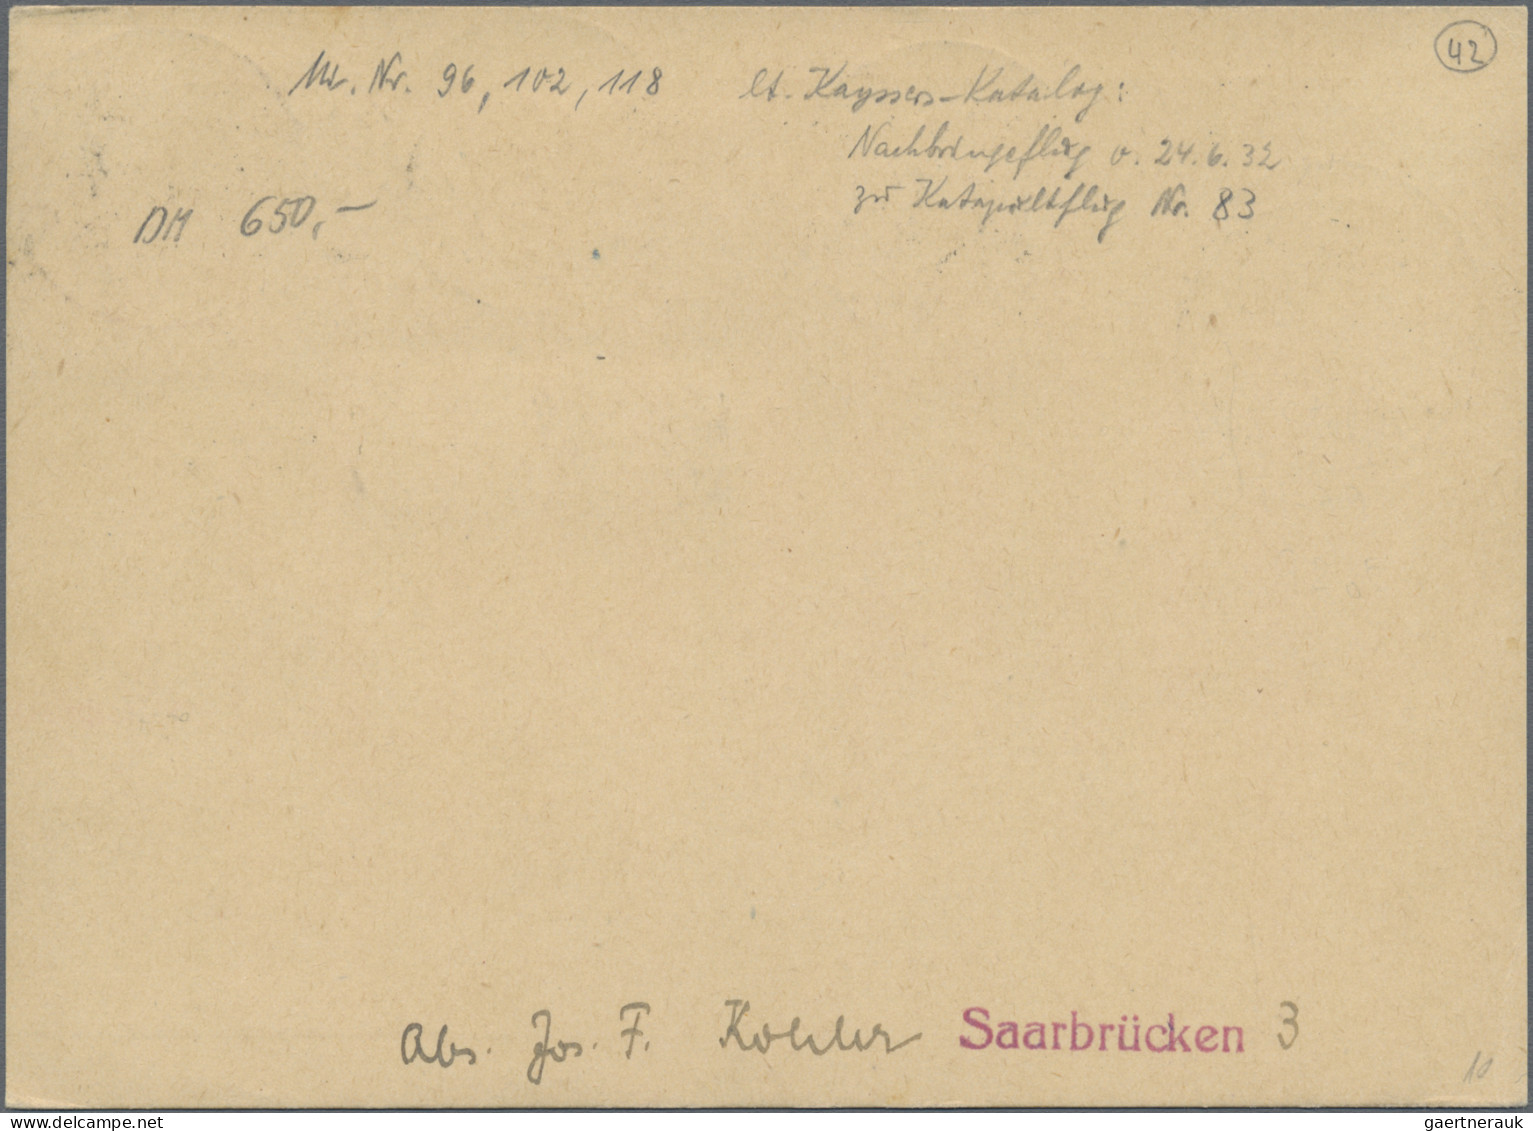 Skid Flight Mail: 1932 (28./29.6.), Mit Luftpost Zum Dampfer "EUROPA" / Deutsche - Luchtpost & Zeppelin